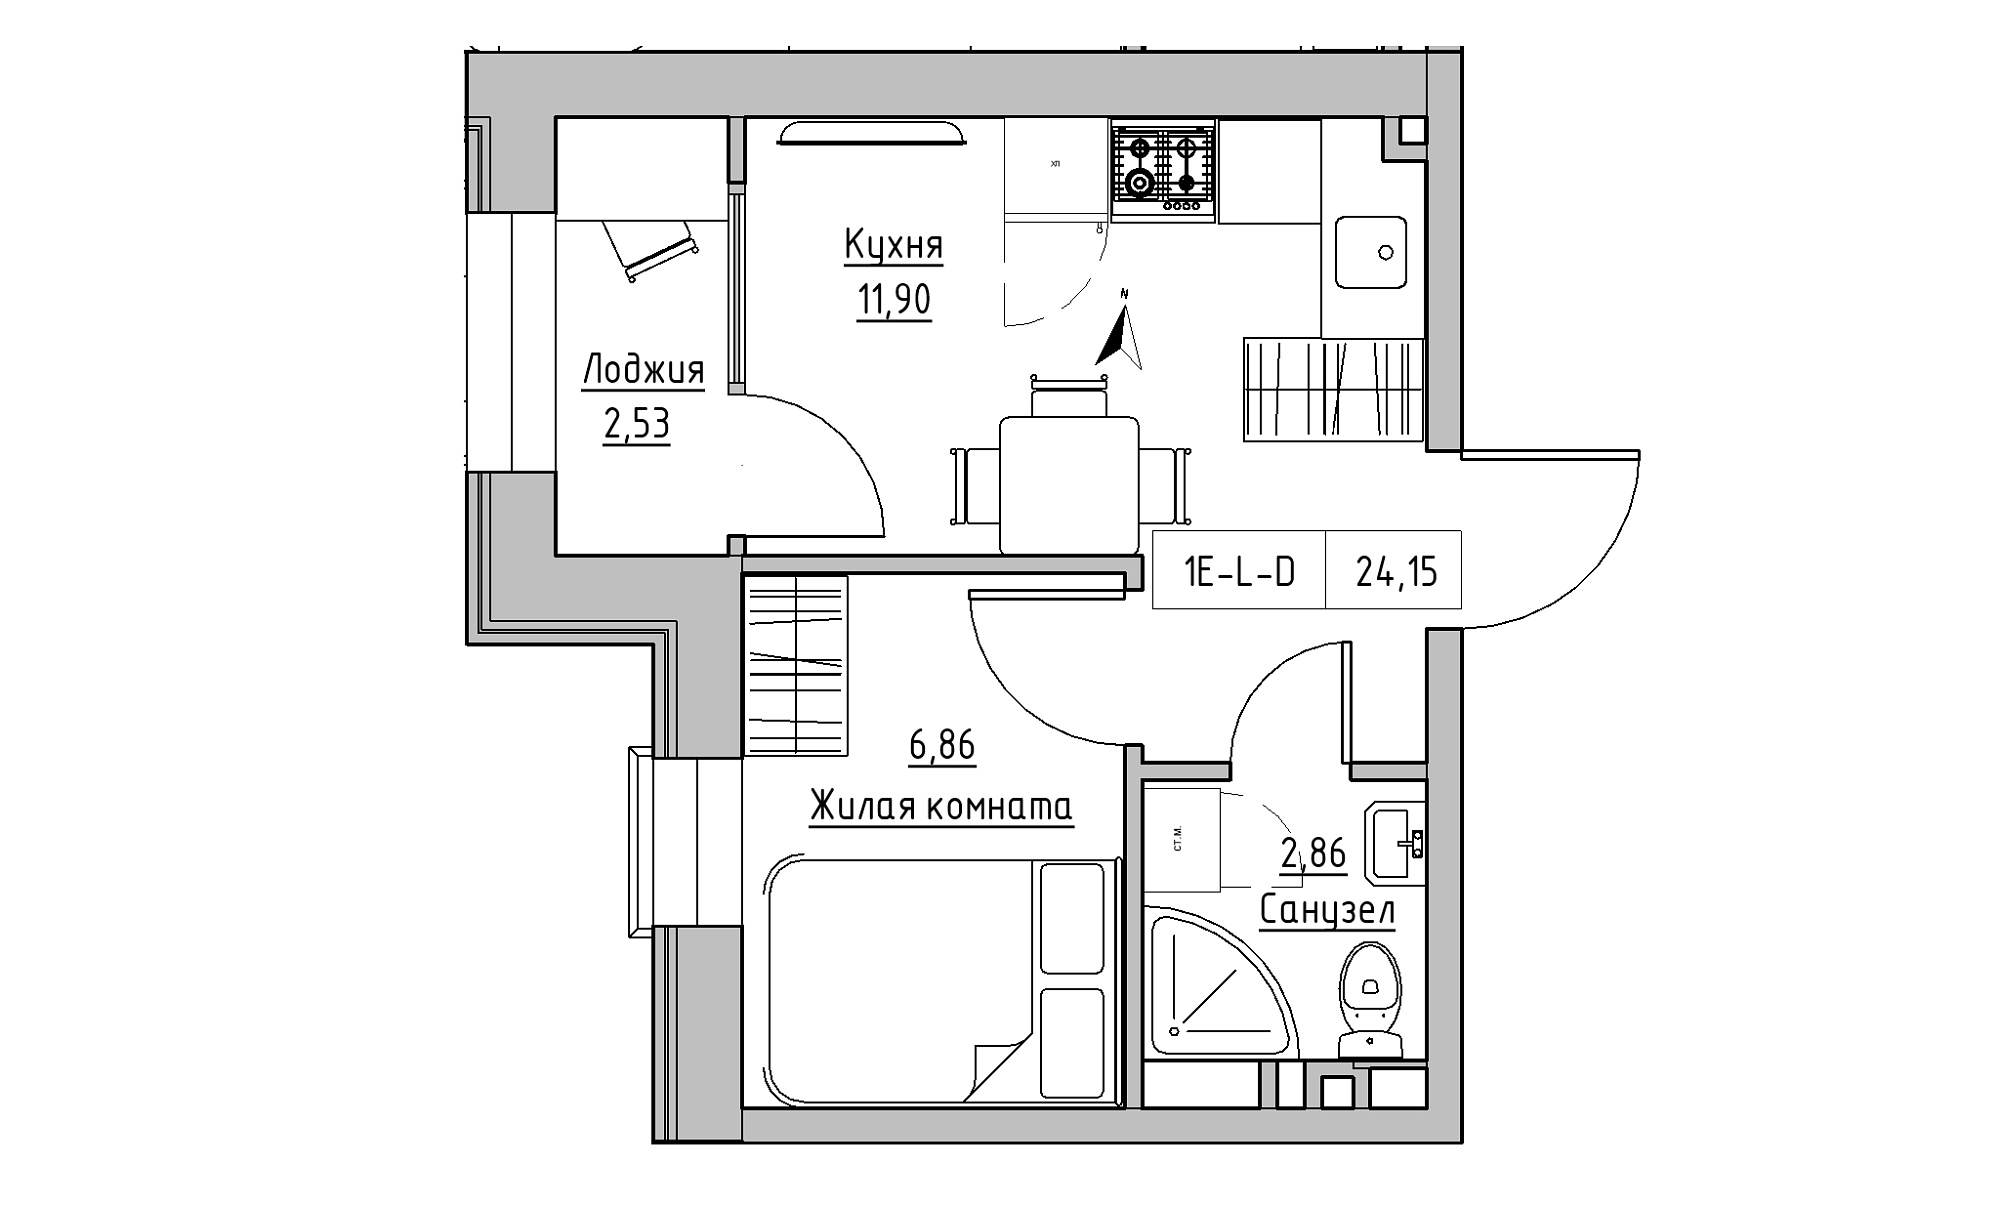 Планировка 1-к квартира площей 24.15м2, KS-023-01/0001.